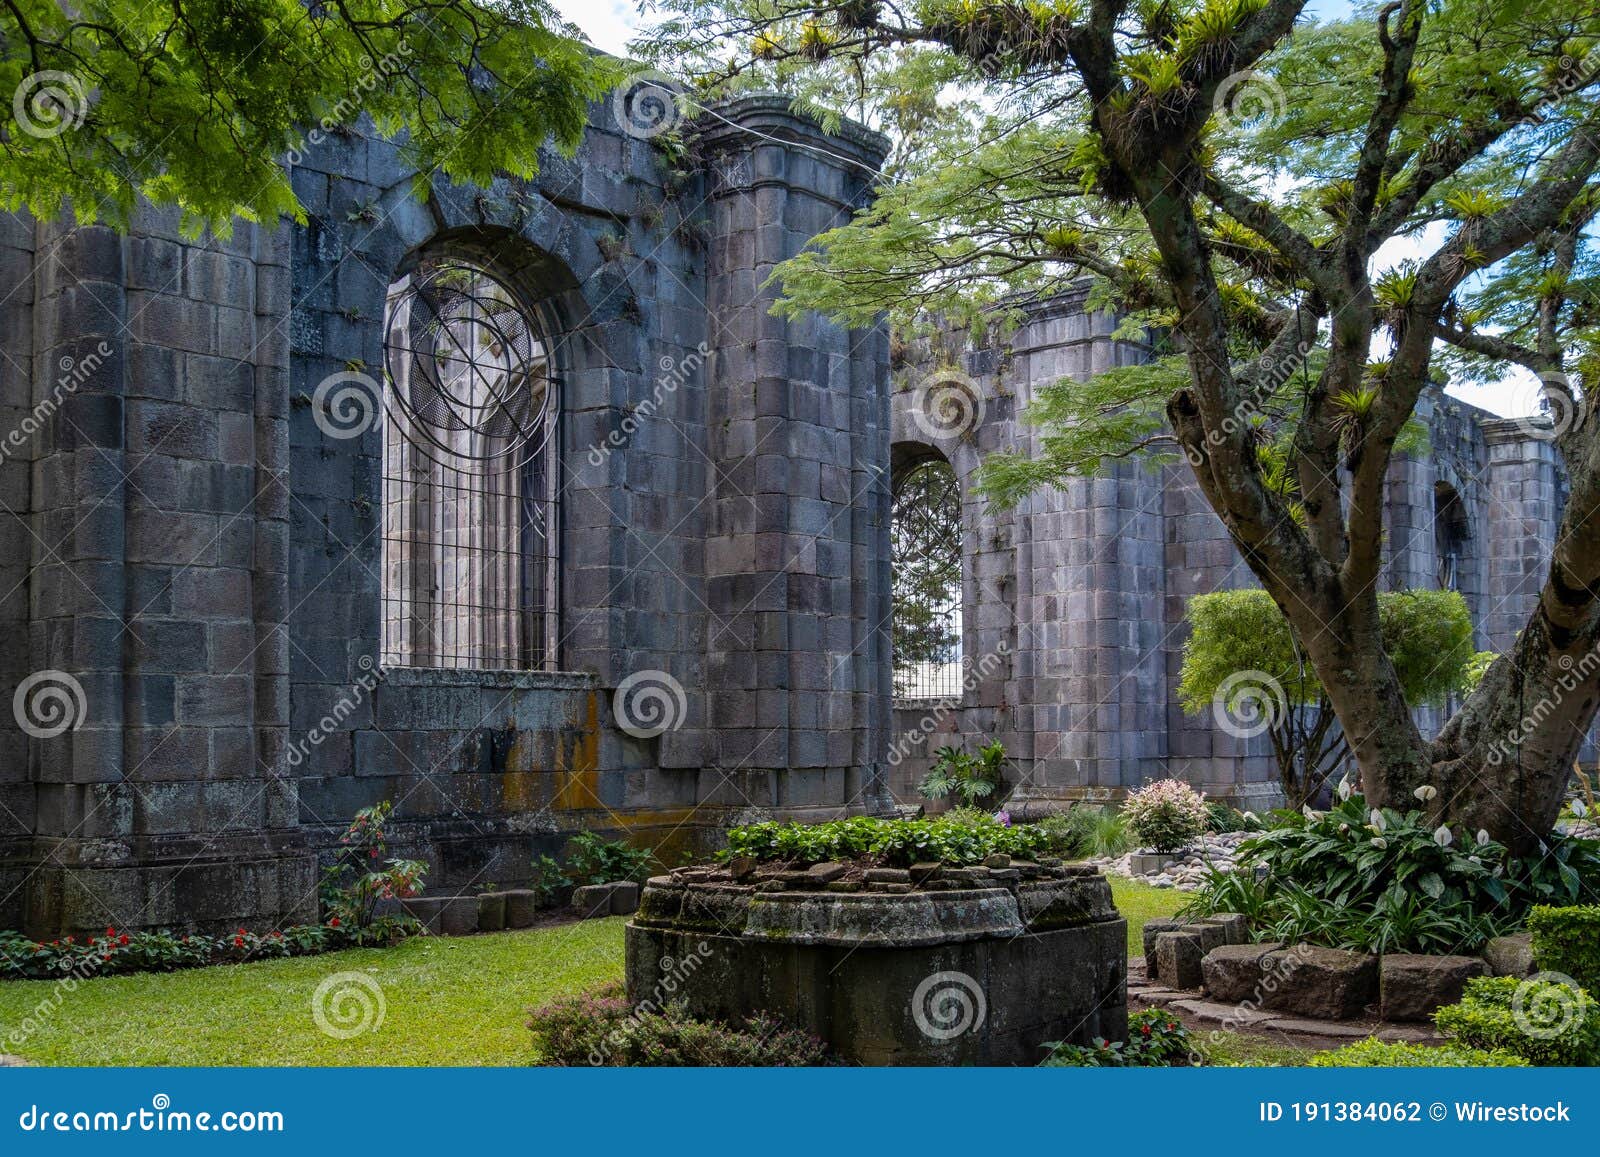 santiago apostol parish ruins in the city of cartago, costa rica